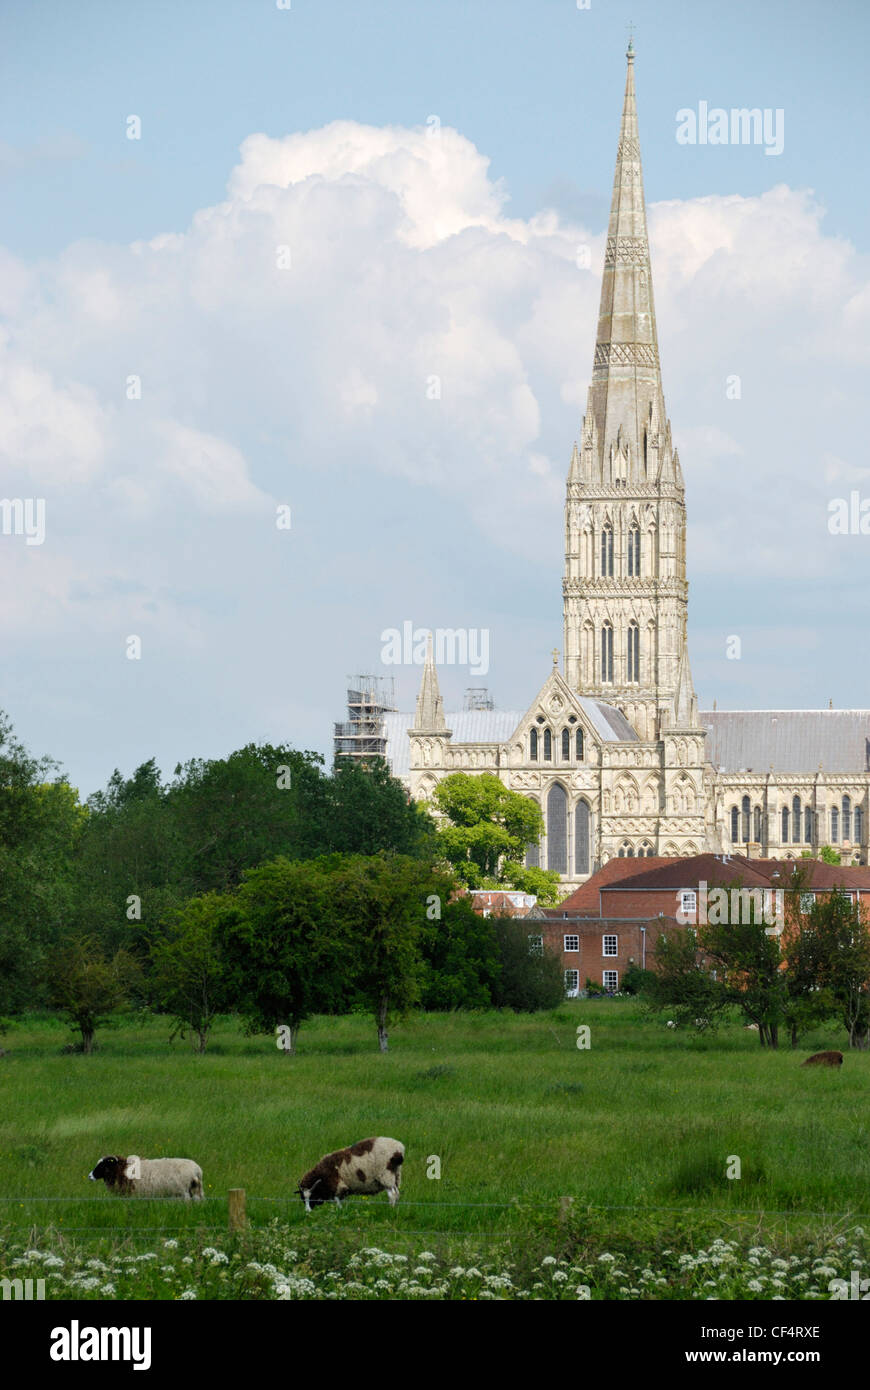 La Cattedrale di Salisbury e Harnham prati d'acqua. La cattedrale ha il più alto guglia della chiesa nel Regno Unito. Foto Stock